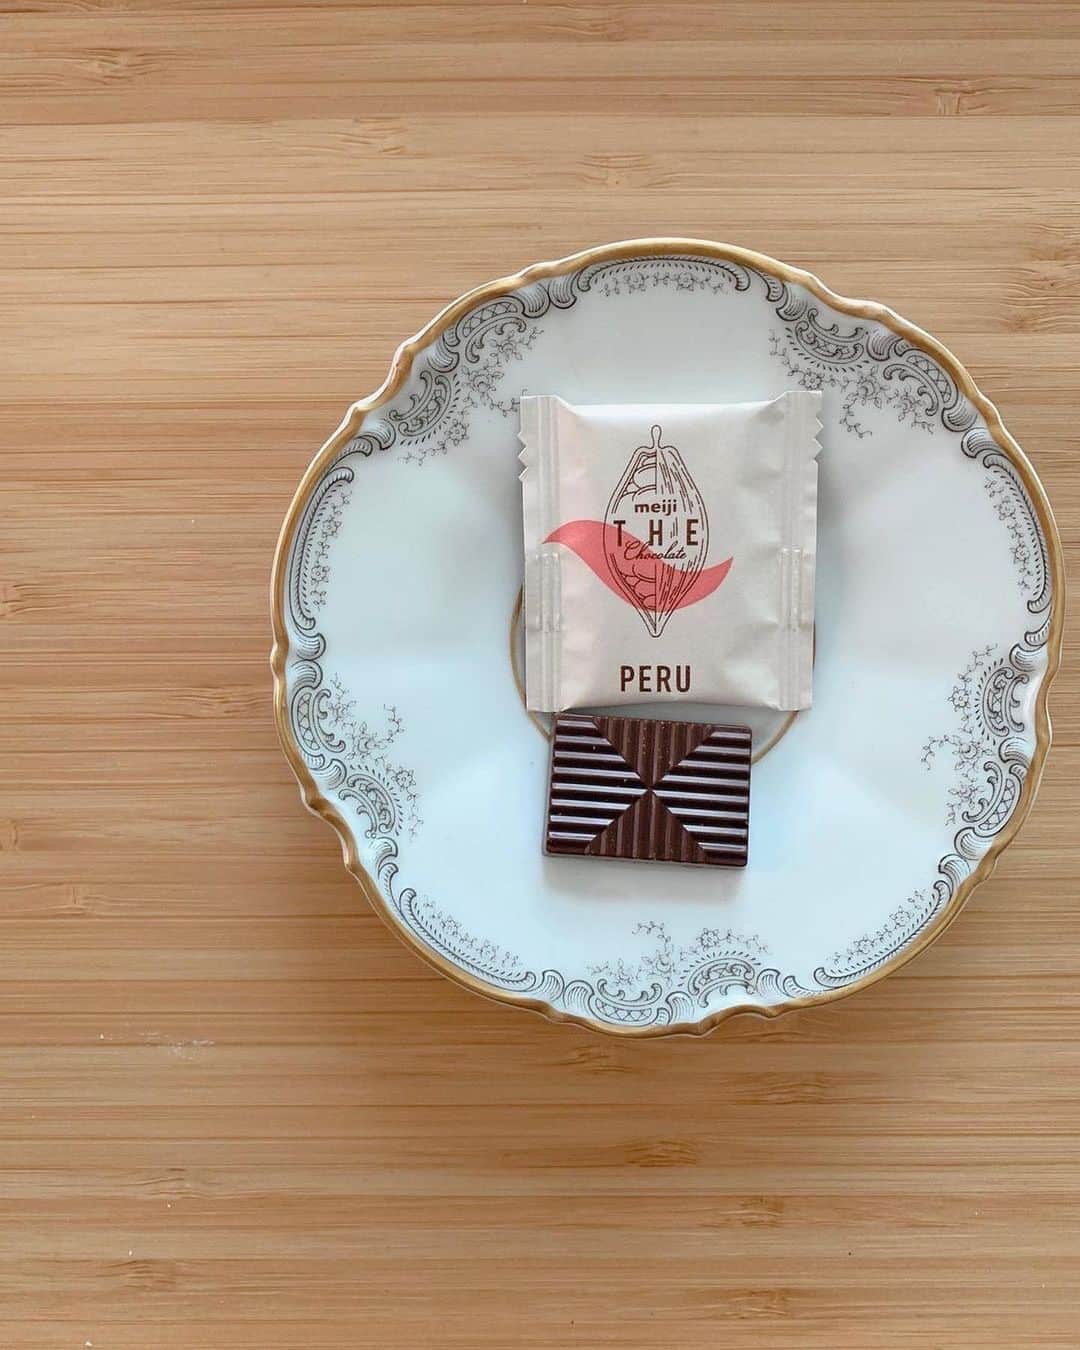 【公式】明治 ザ・チョコレートのインスタグラム：「* ザチョコを食べ比べしていただきありがとうございます✨ お気に入りを見つけていただいたようでとても嬉しいです。  今後もひと休憩する際の お供としていただければと思います♡  @hirokopon2006 さんのザチョコの投稿をご紹介いたします。  明治 ザ・チョコレート公式Instagramでは、ザチョコをお愉しみいただいている皆さんの写真を募集しています。  #私のザチョコの愉しみ方 をつけてシェアしてくださいね。  #peruがとっても好き  #明治thechocolate #明治ザチョコレート #私のザチョコの愉しみ方 #thechocolate #ザチョコレート #ザチョコ #明治 #meiji #おうちチョコ #語りたくなるチョコレート #ベネズエラ #ブラジル #ペルー #ドミニカ共和国 #チョコレート #🍫 #ビーントゥバー #BEANtoBAR #チョコレート好き #チョコレートのある暮らし #チョコレートのある生活 #甘いもの好きな人と繋がりたい #SDGs #メイジカカオサポート #エシカル #サステナブル #サステナブルなチョコレート」